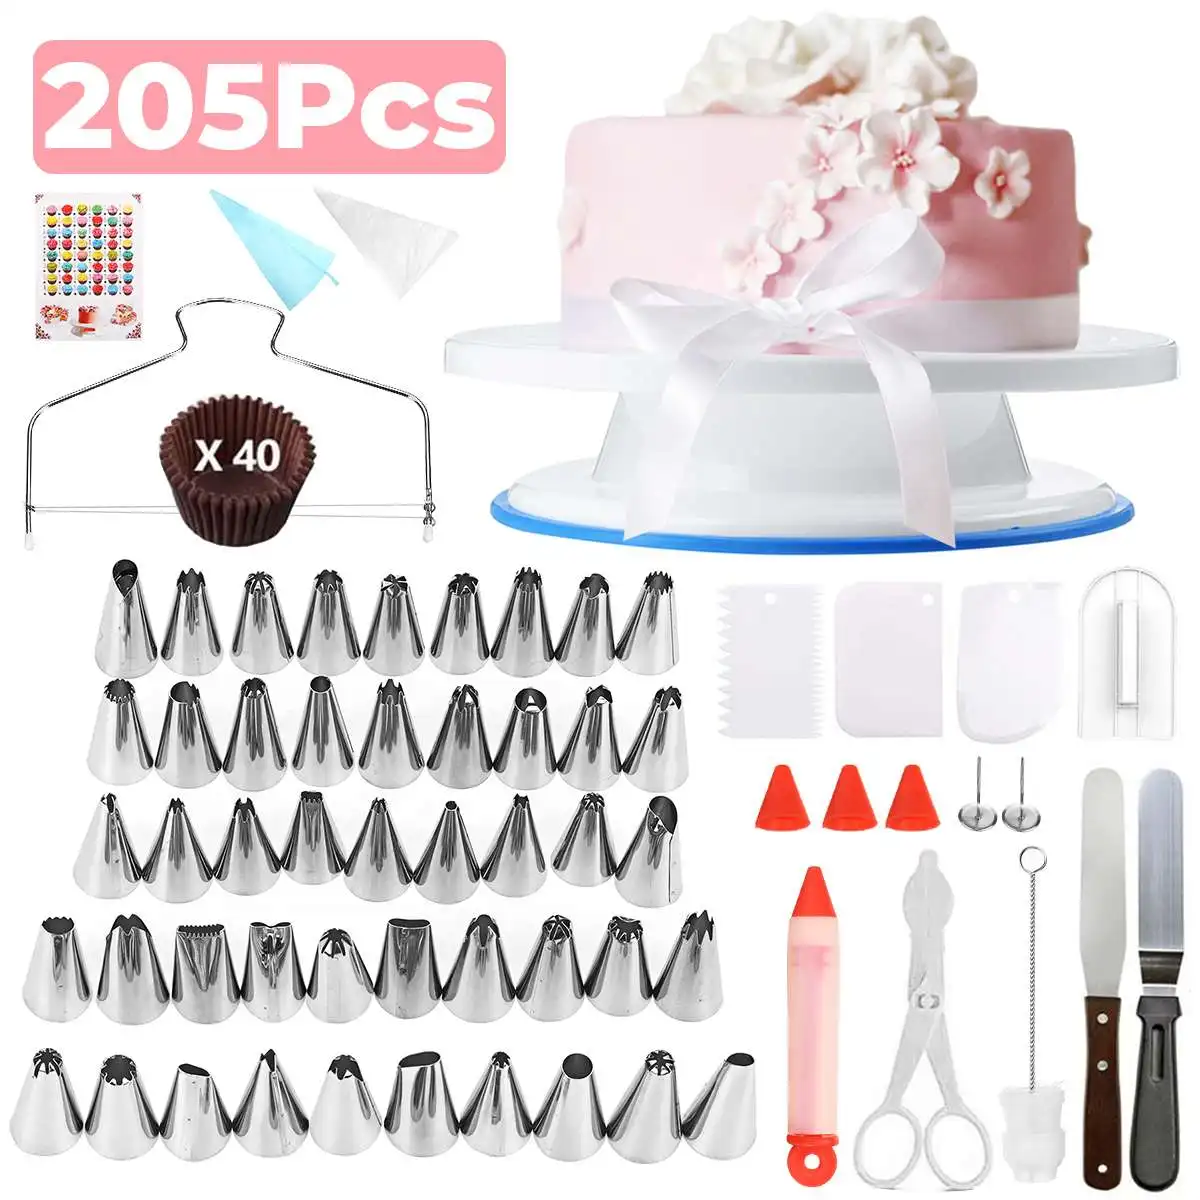 GEMITTO-Kit de herramientas de decoración de pasteles, soporte giratorio, boquilla de crema para Fondant, pastelería, panadería, 205 piezas